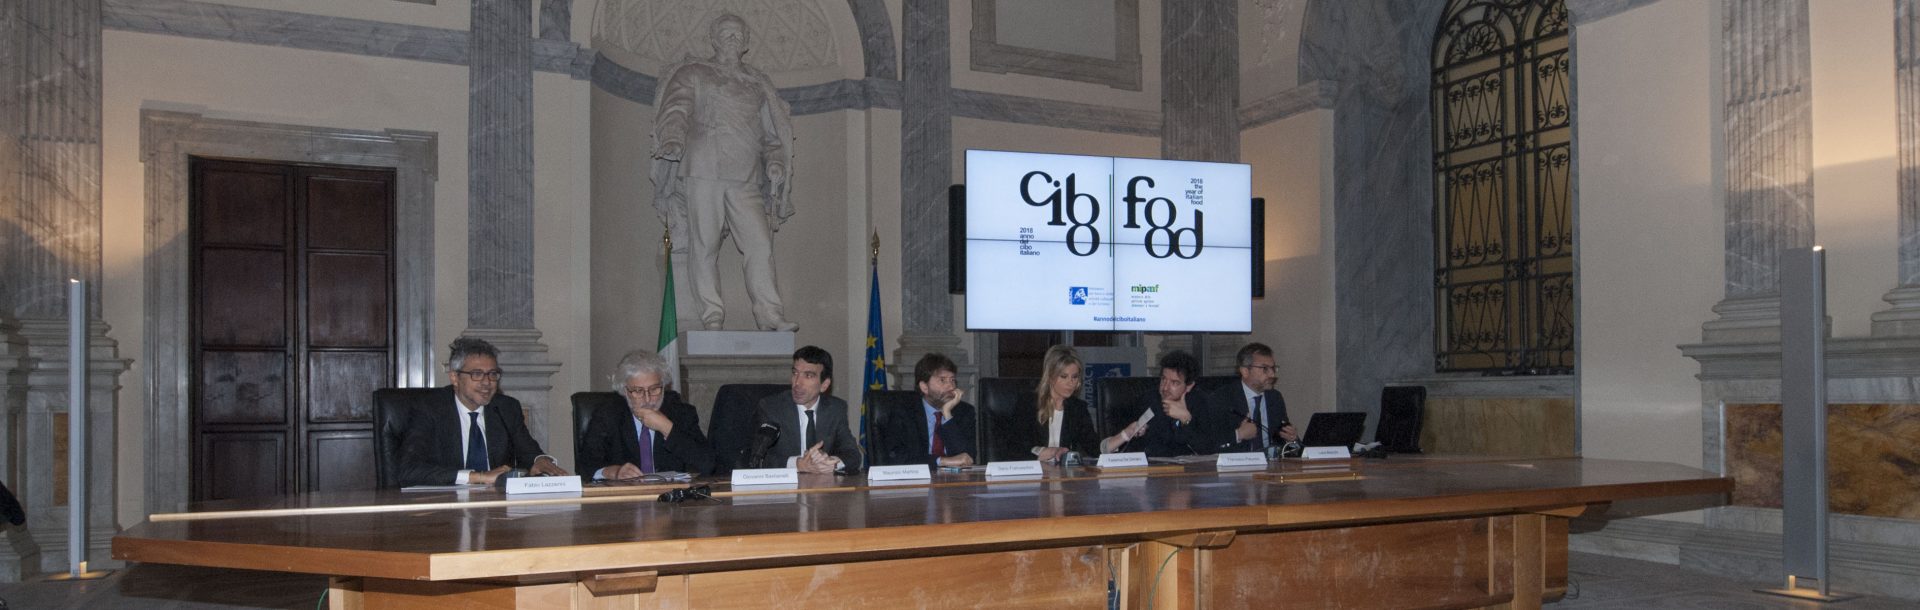 Al Collegio Romano la conferenza stampa di presentazione dell'Anno del Cibo Italiano, con i Ministri Franceschini e Martina